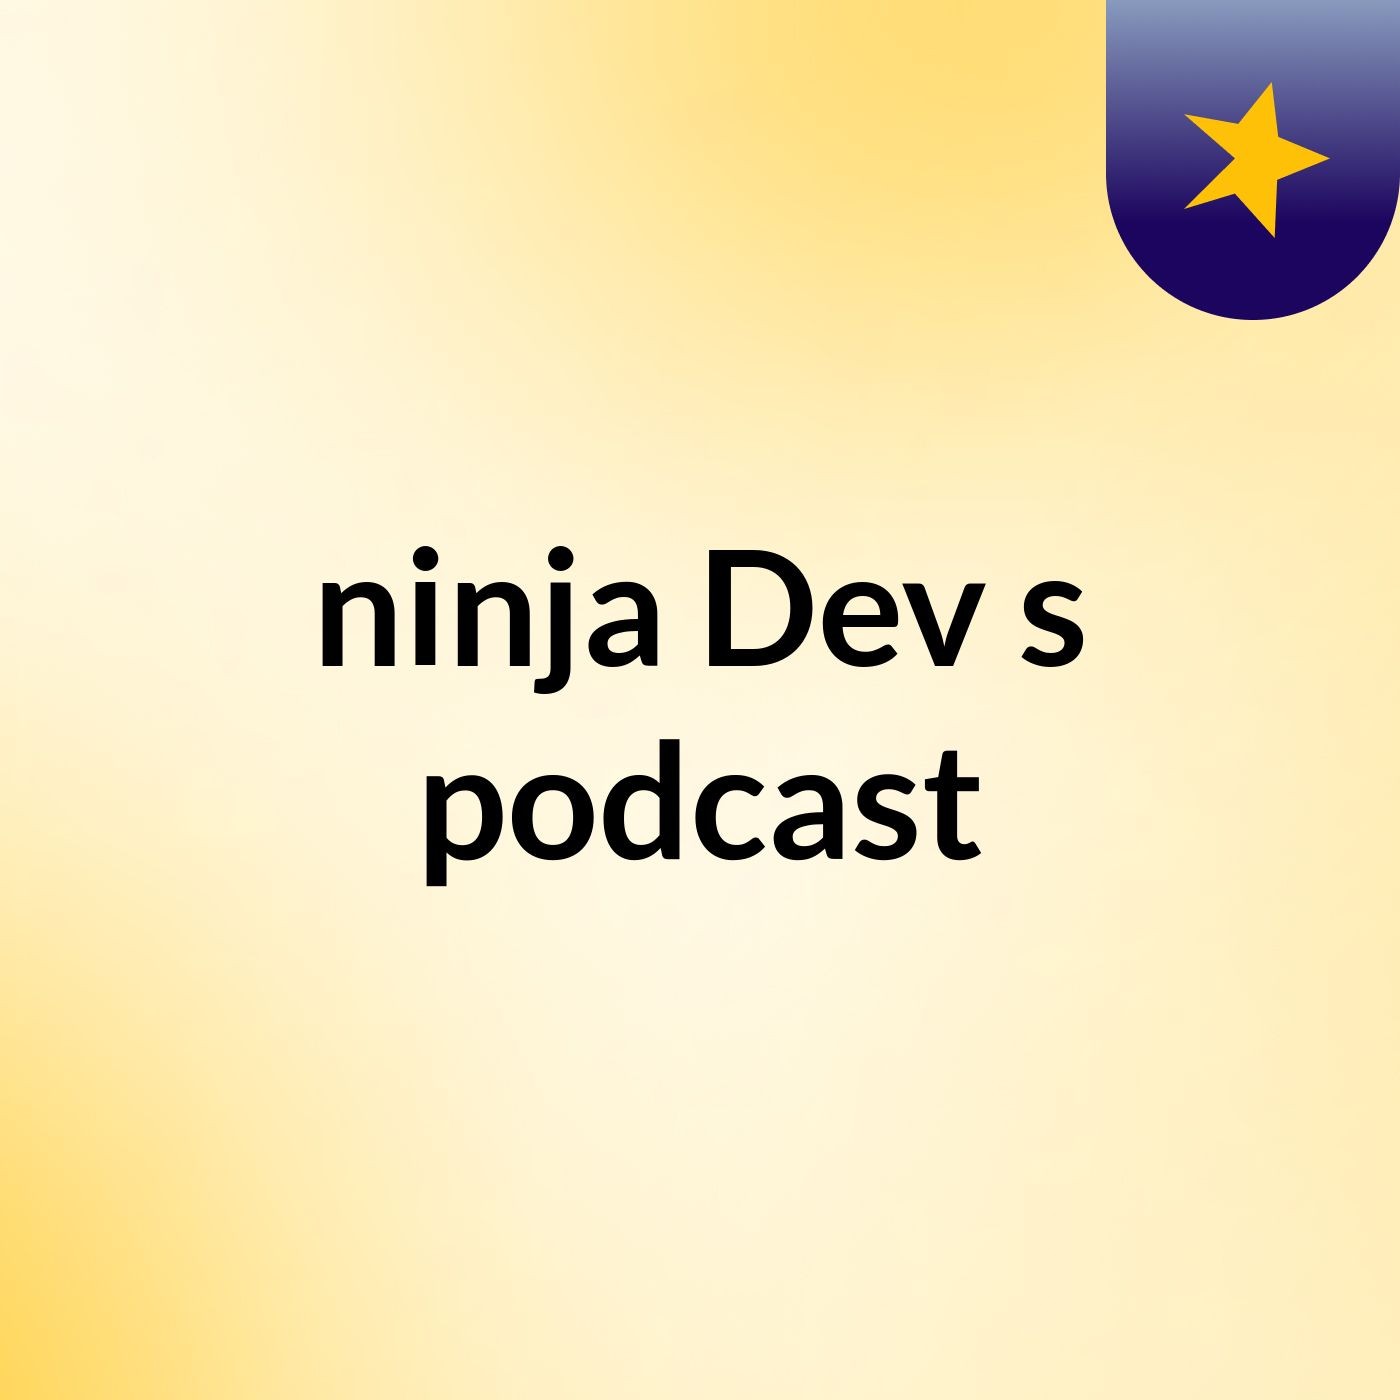 Episode 7 - ninja Dev's podcast